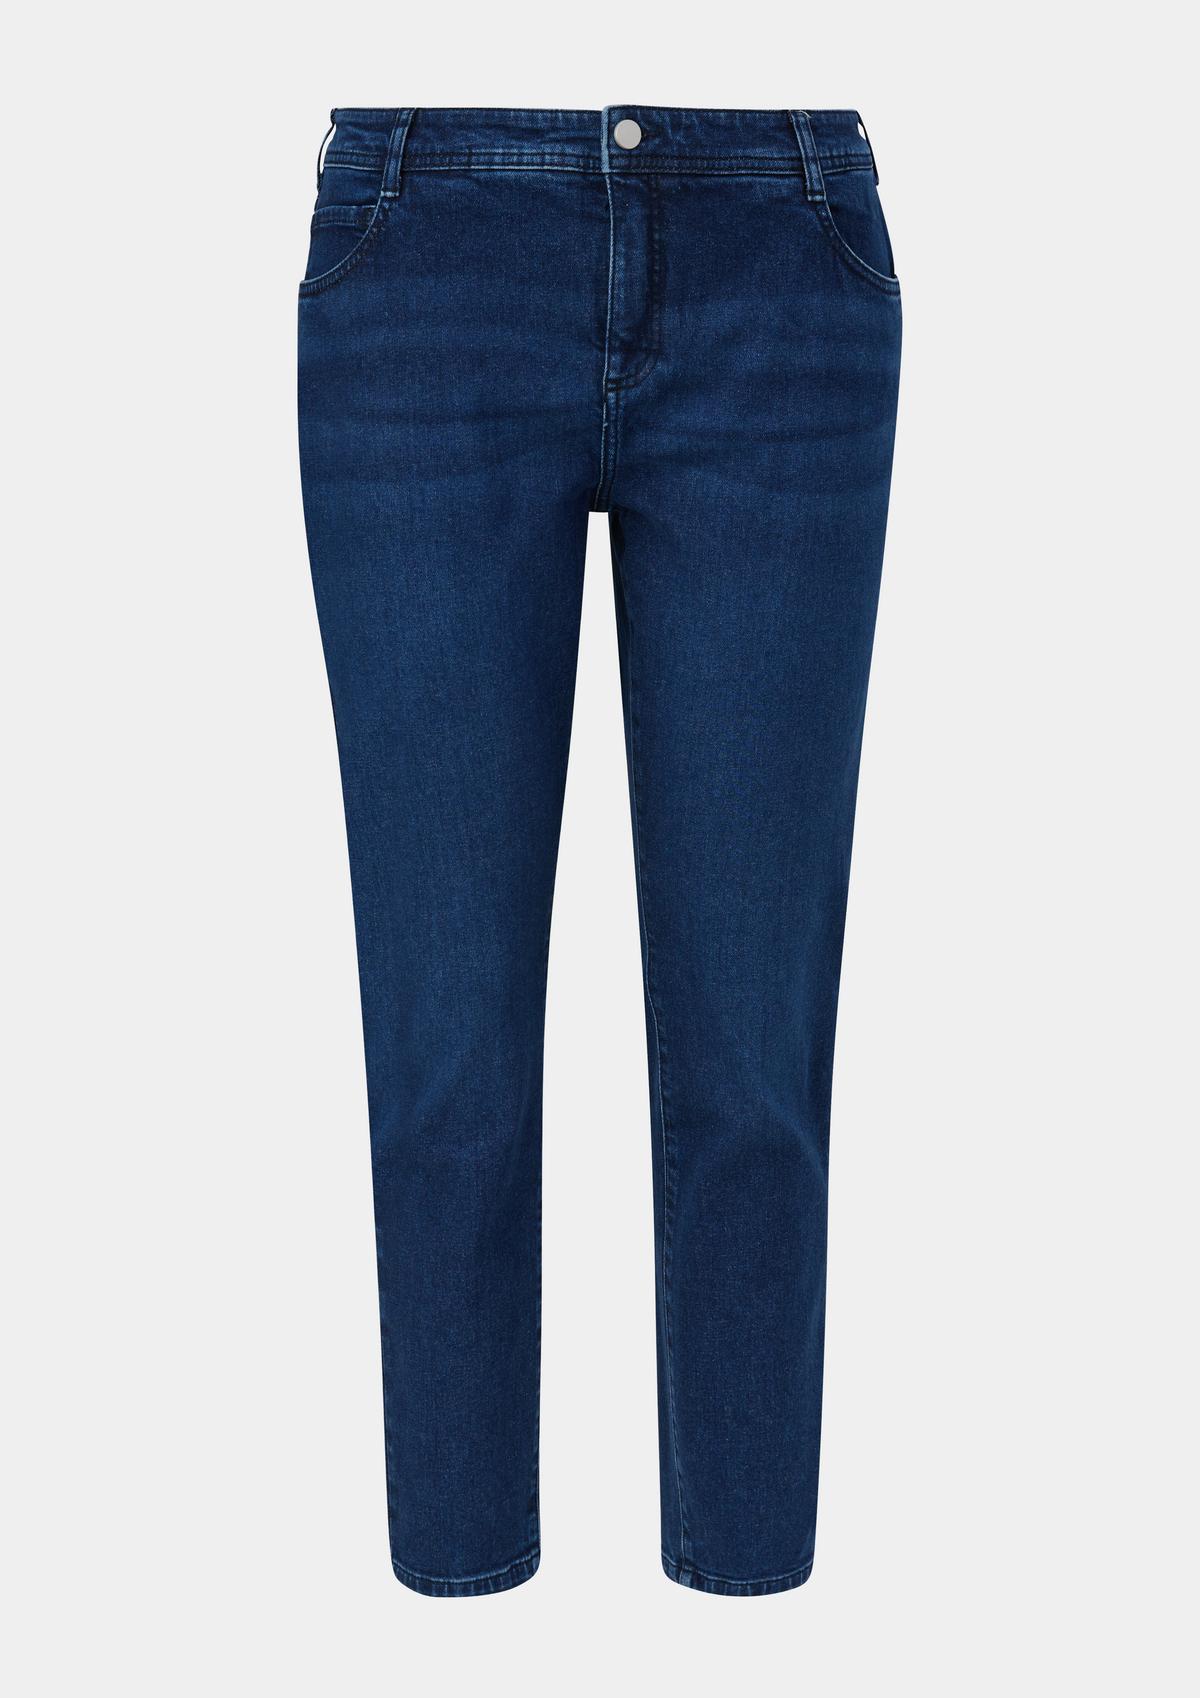 | Jeans / skinny / blue / rise leg mid fit five-pocket skinny Oliver design / s. -